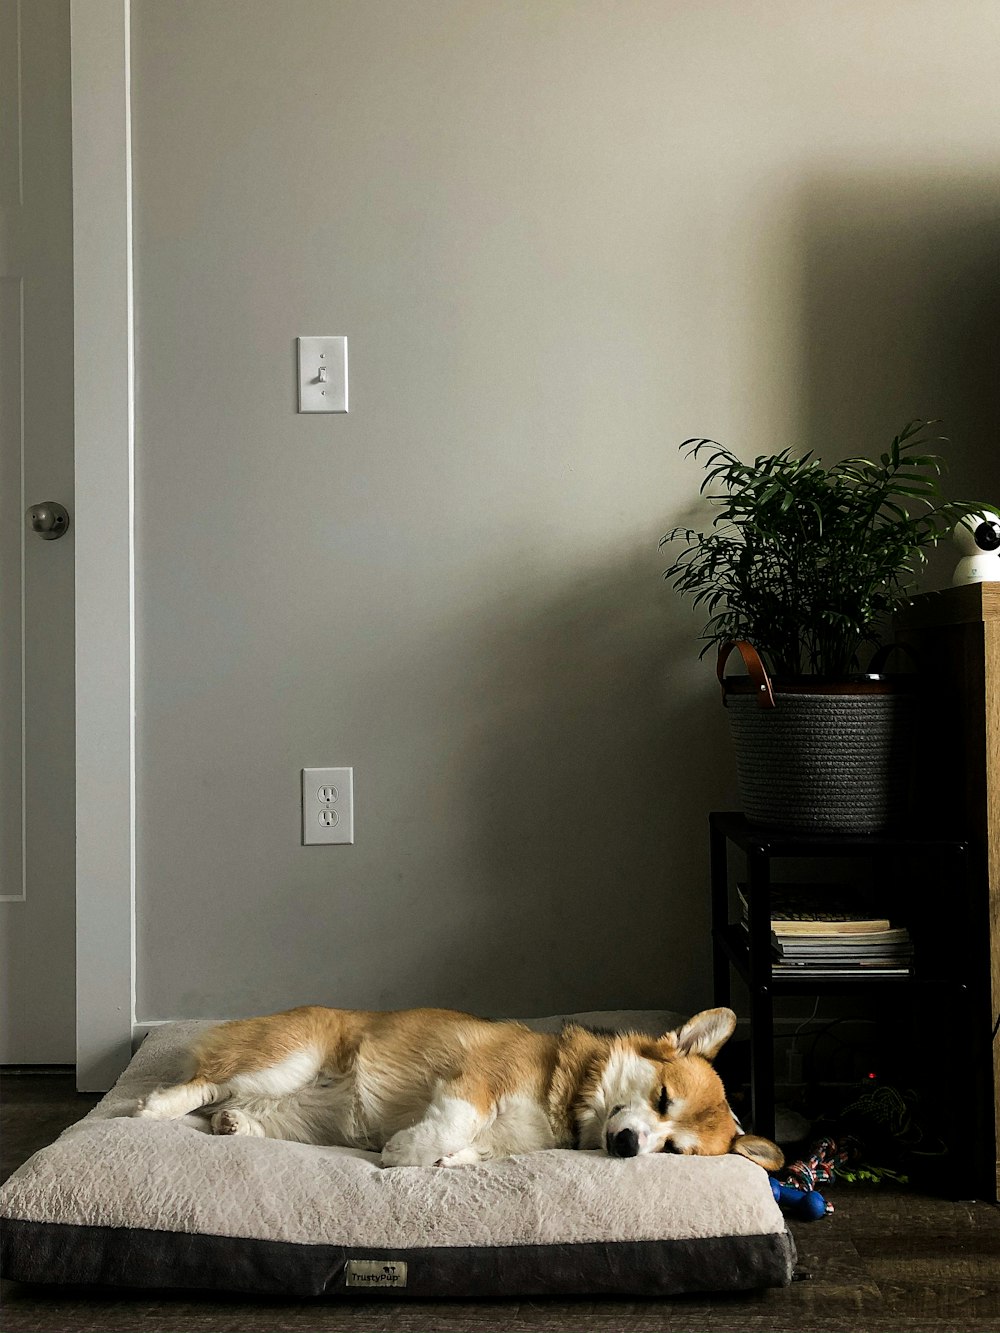 애완 동물 침대에 누워있는 짧은 코팅 흰색과 갈색 개